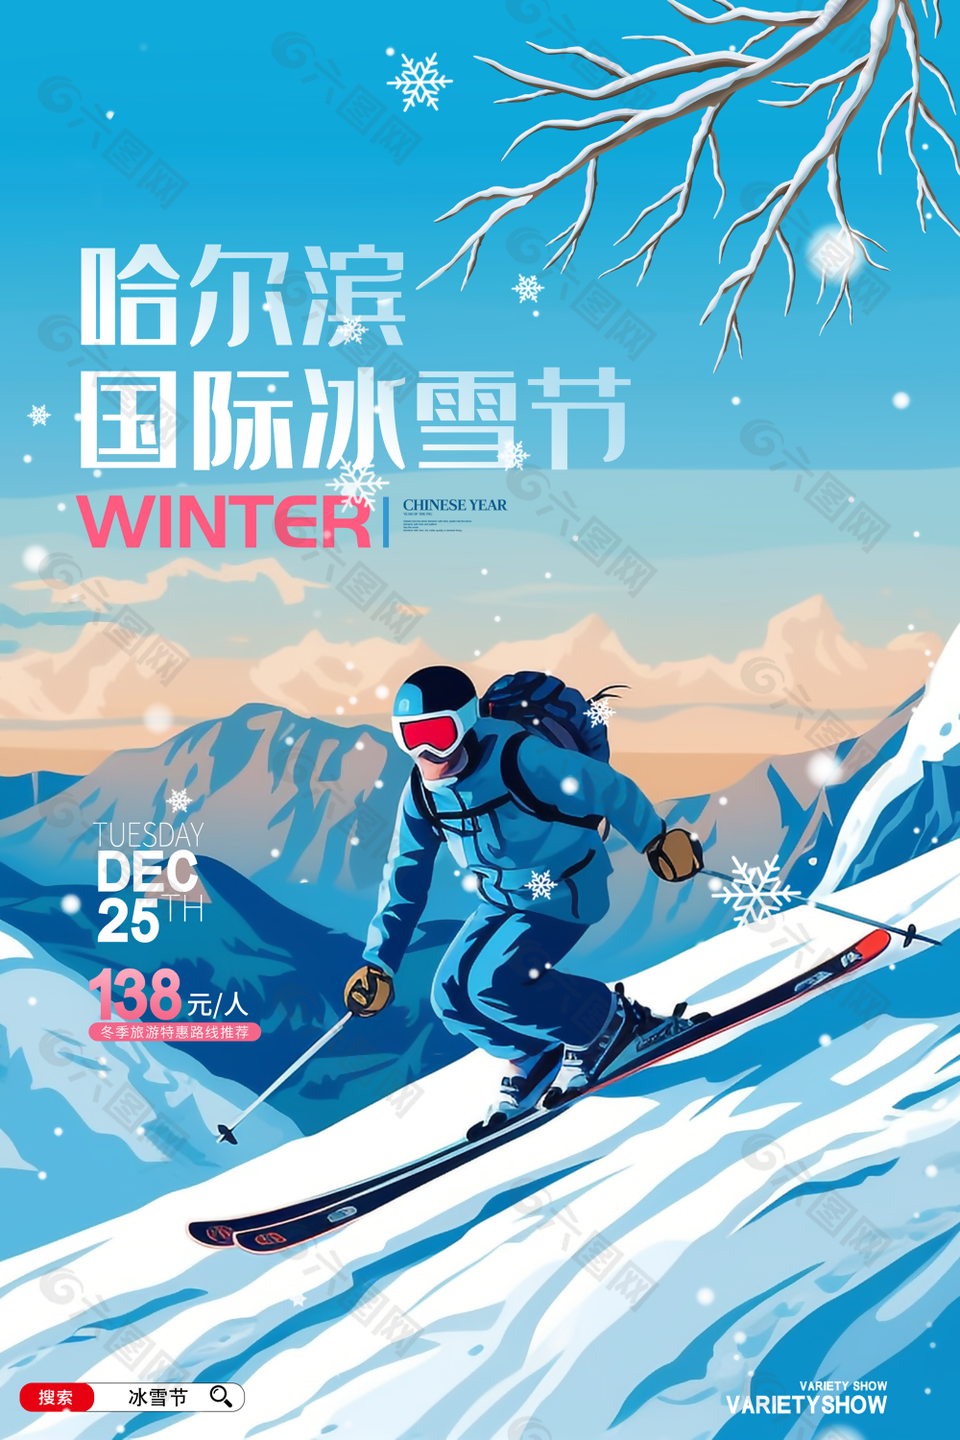 蓝色质感精美哈尔滨国际冰雪节海报图设计